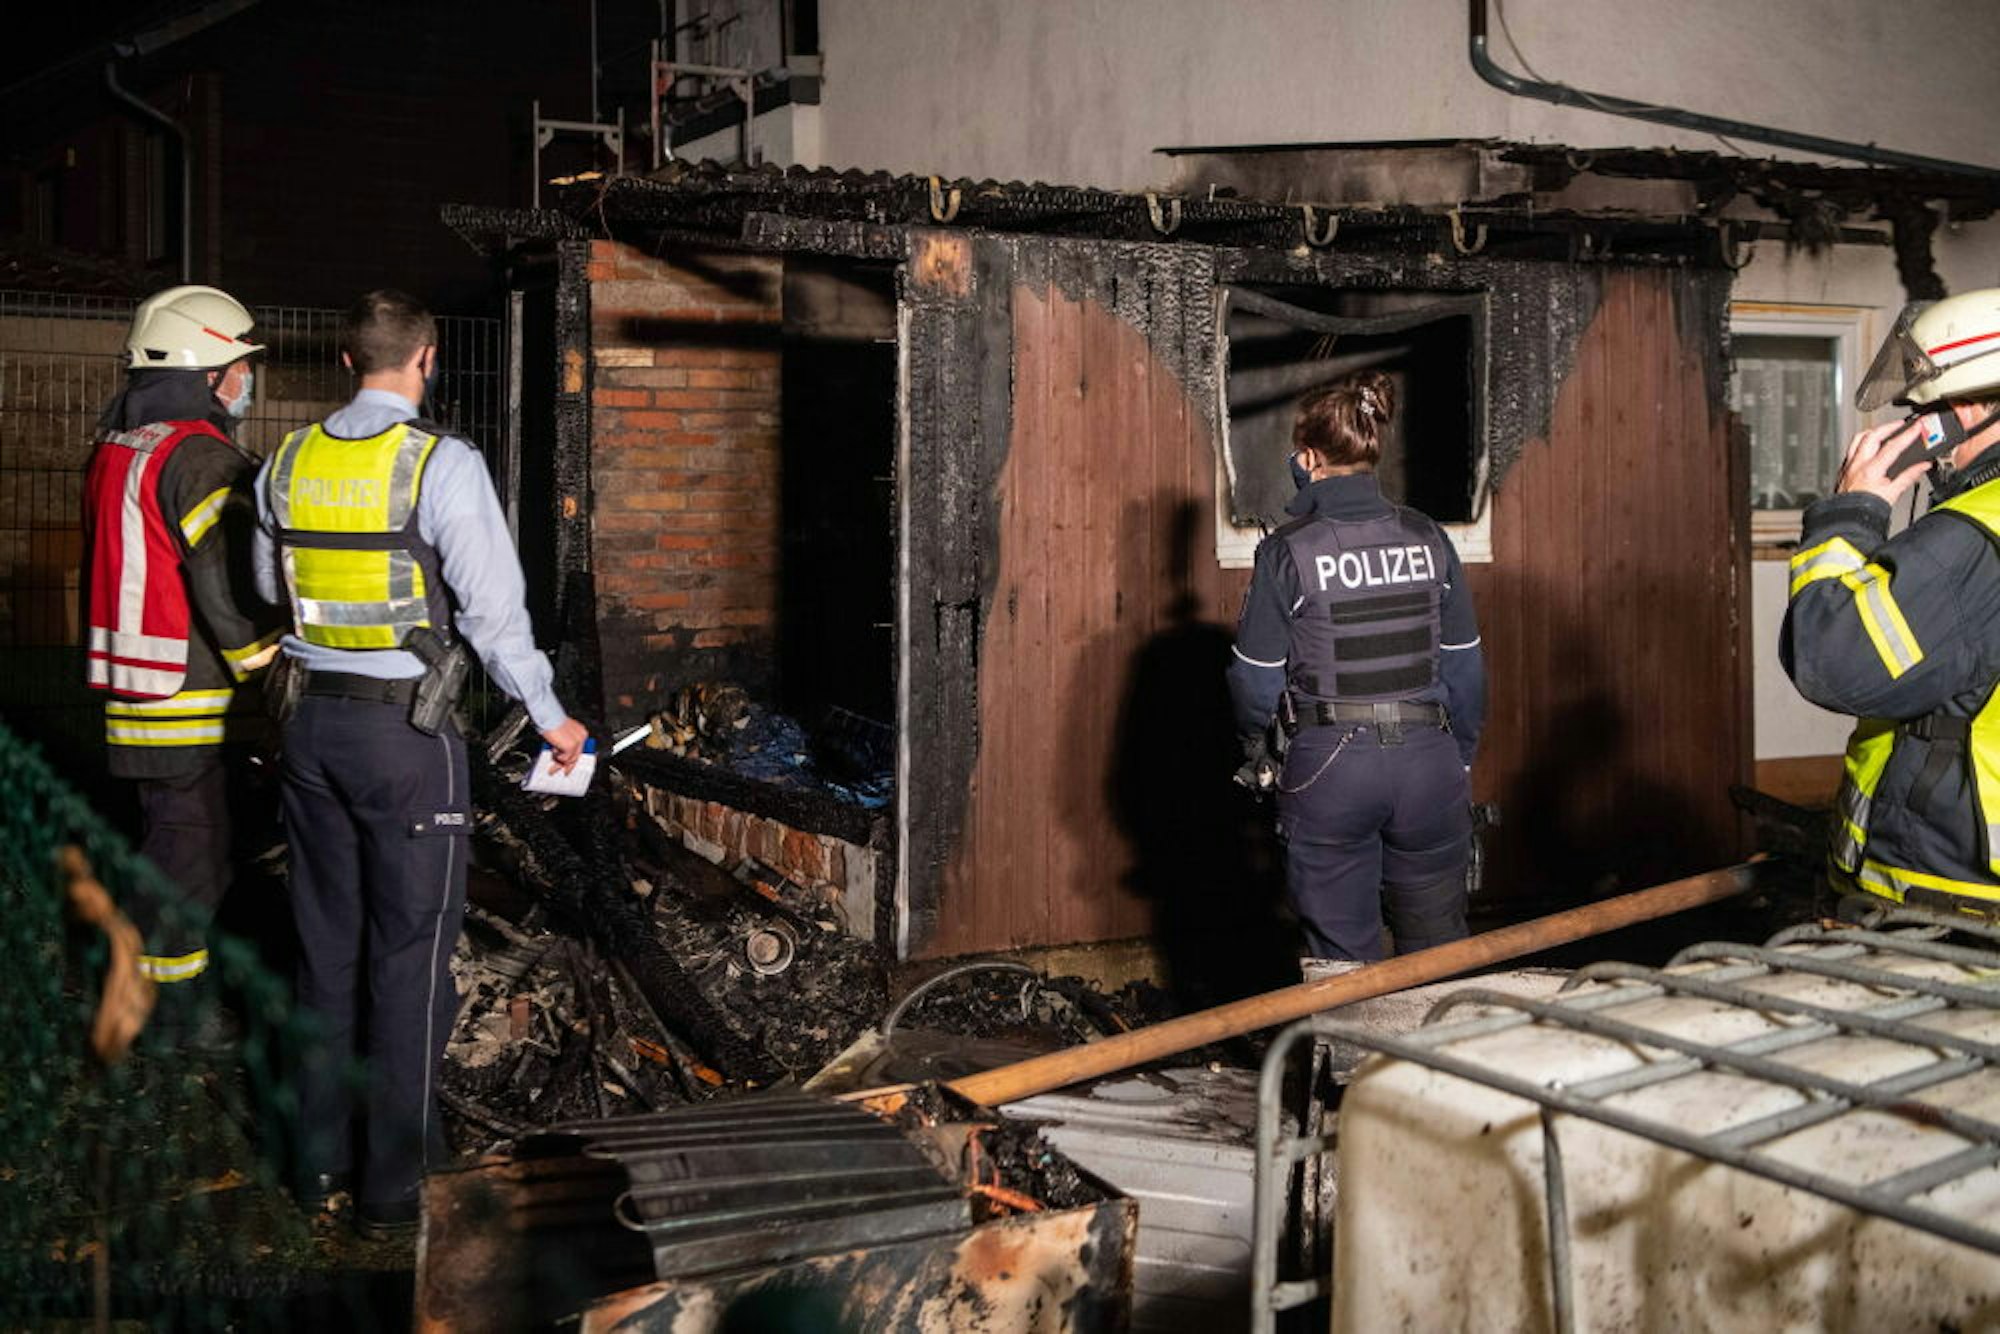 Die Brandserie hielt Polizei und Feuerwehr monatelang auf Trab. Bei einem Feuer am 10. Oktober konnte sich eine Bewohnerin im letzten Augenblick vor den Flammen in Sicherheit bringen.